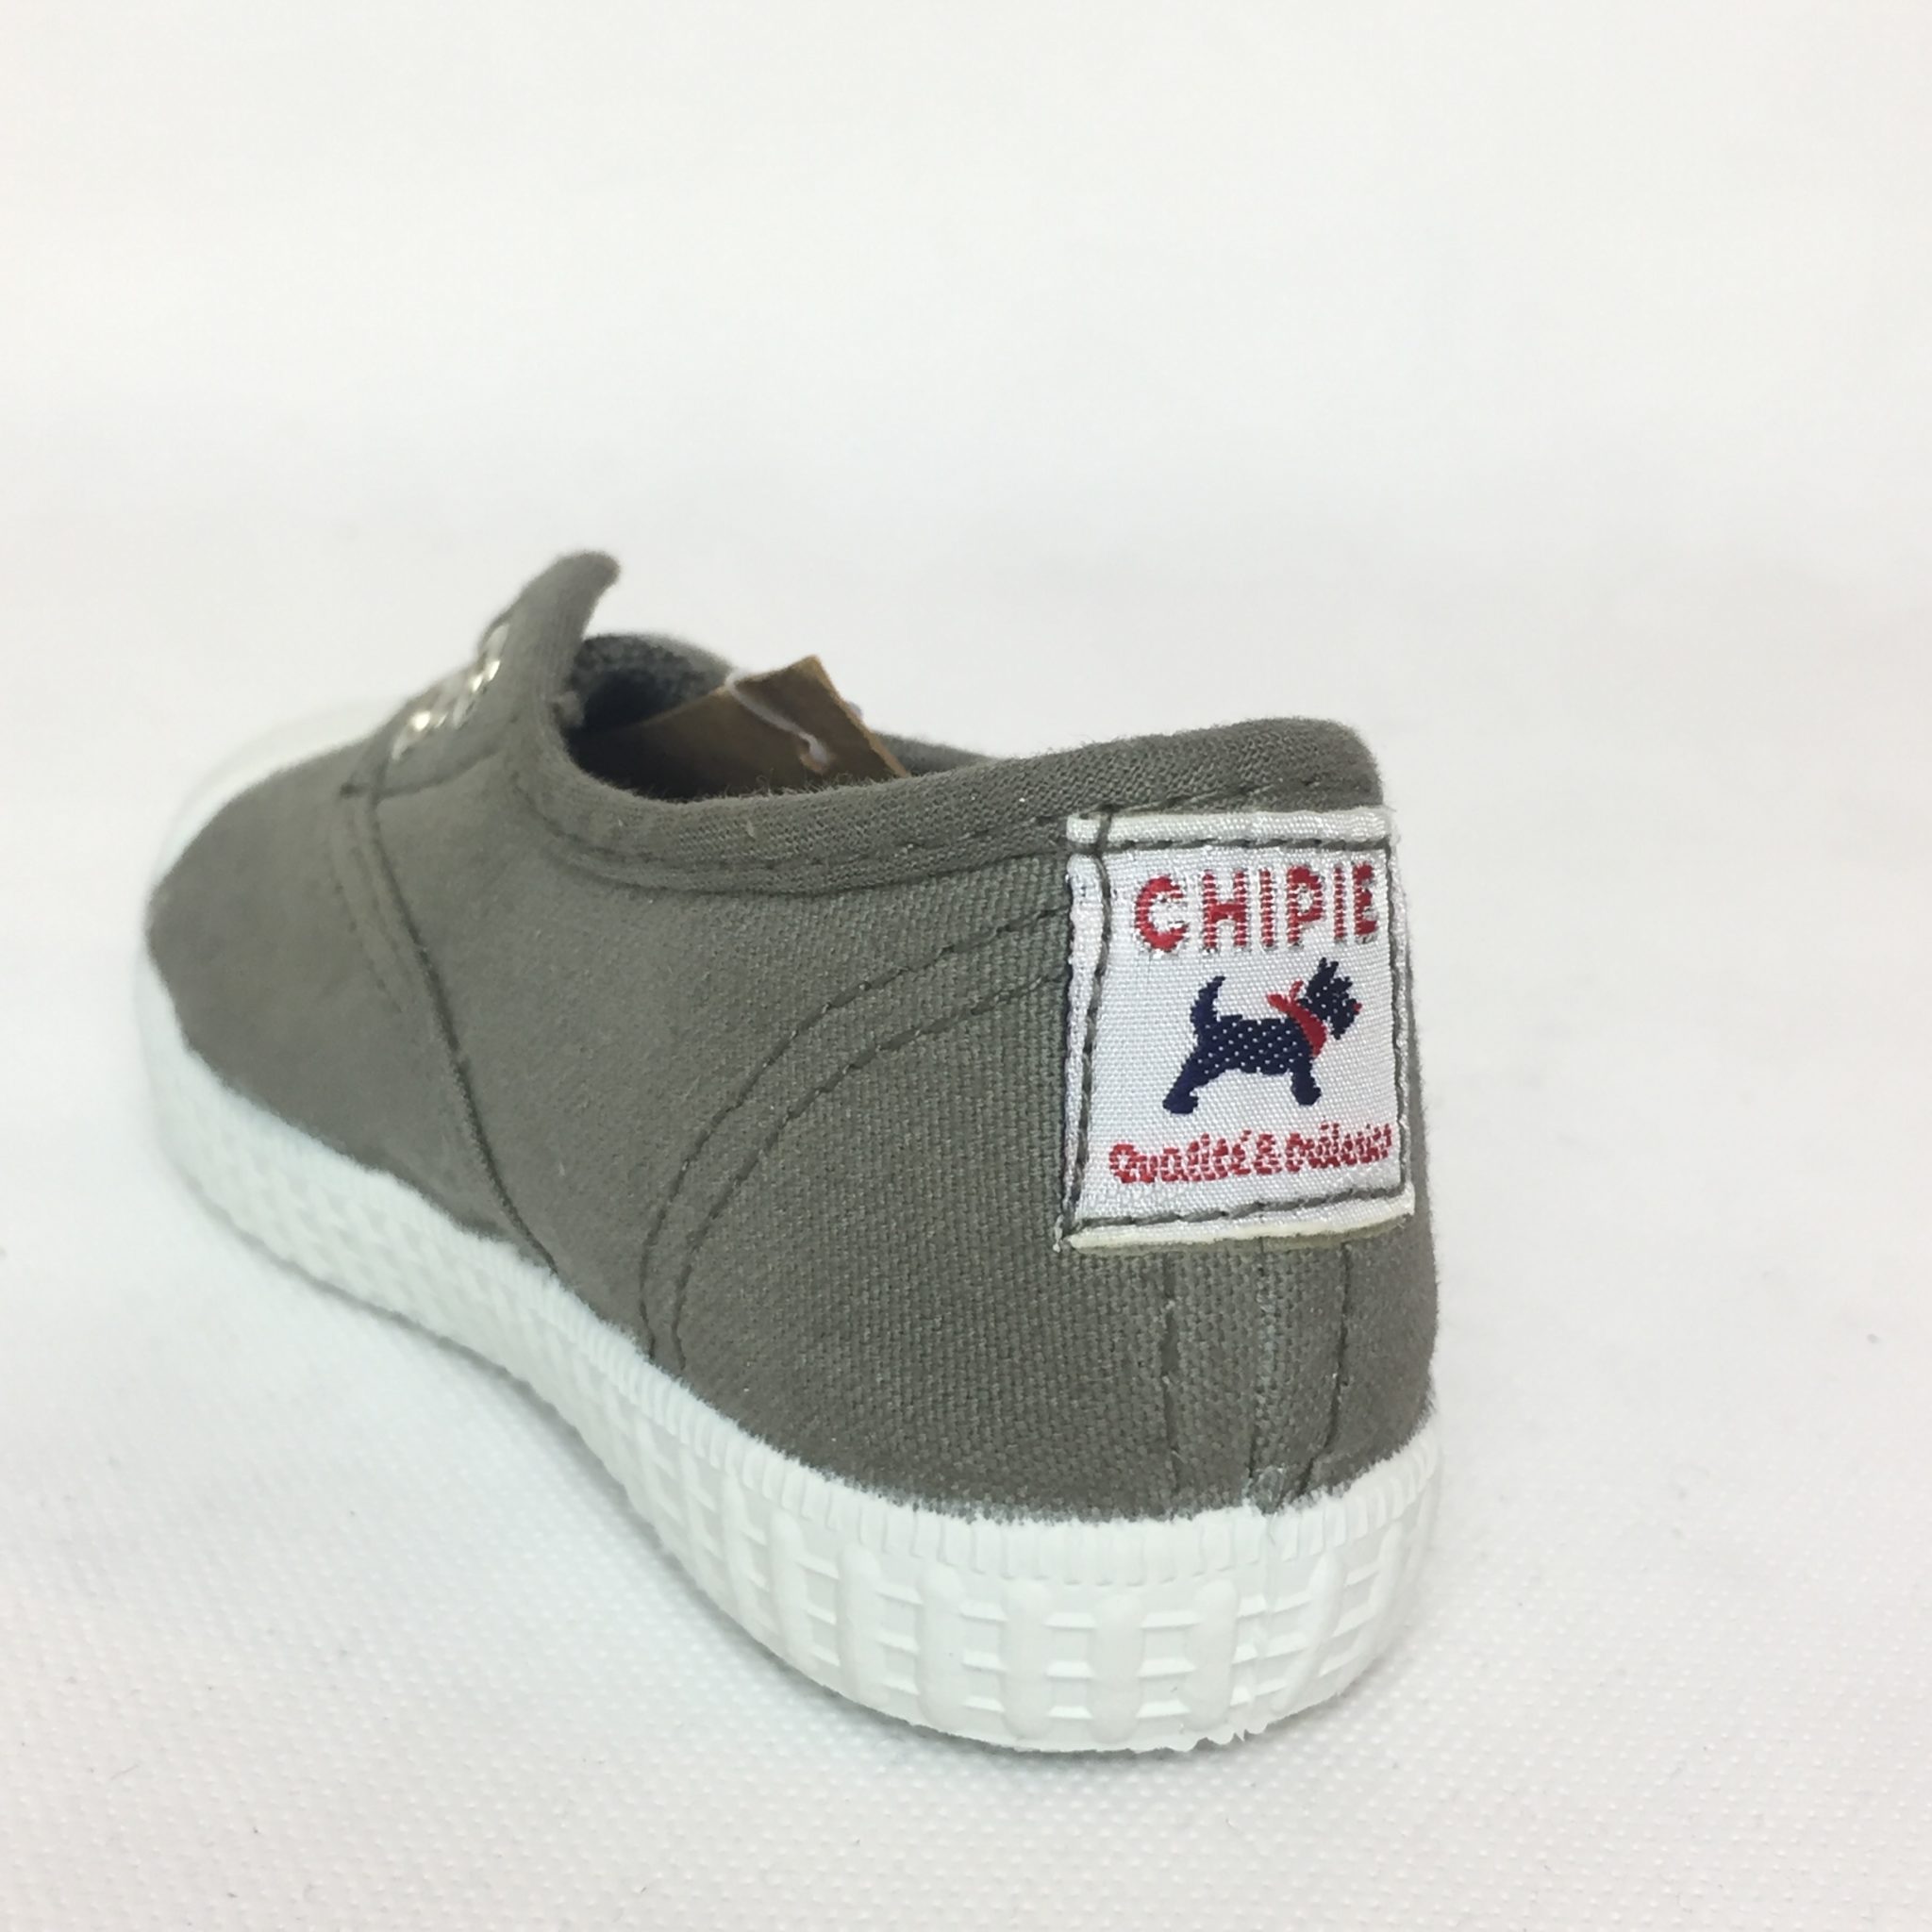 chipie scarpe 2019